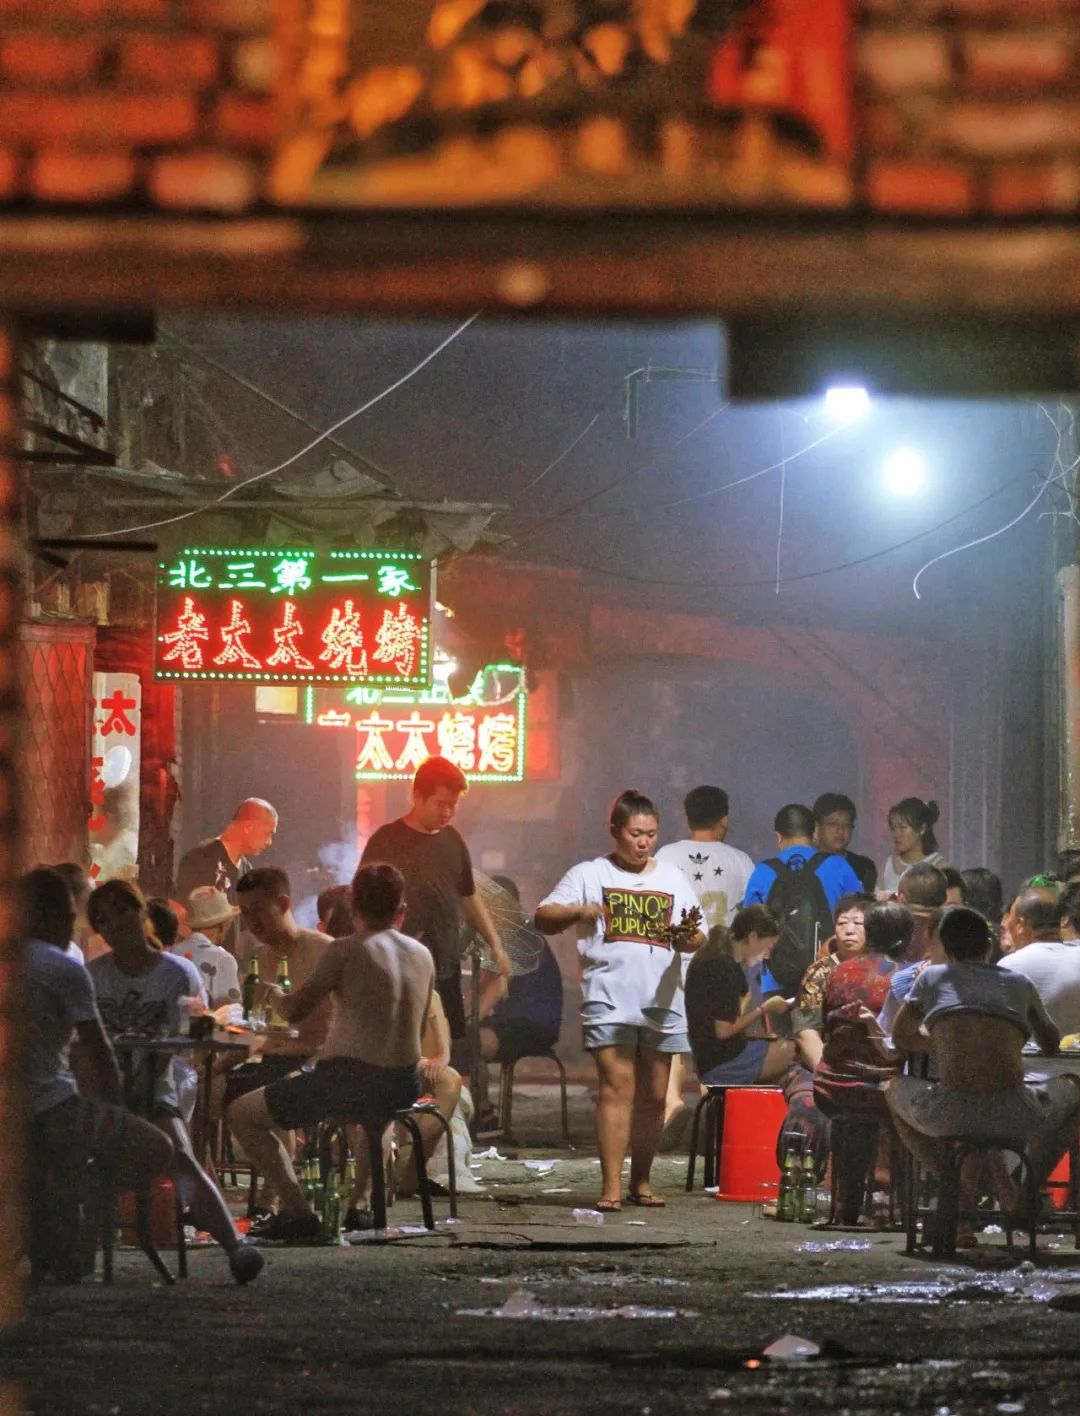 回重庆第一顿夜宵 必须是路边摊烧烤！本地人才懂的快乐，整起！（重庆方言版） - 哔哩哔哩